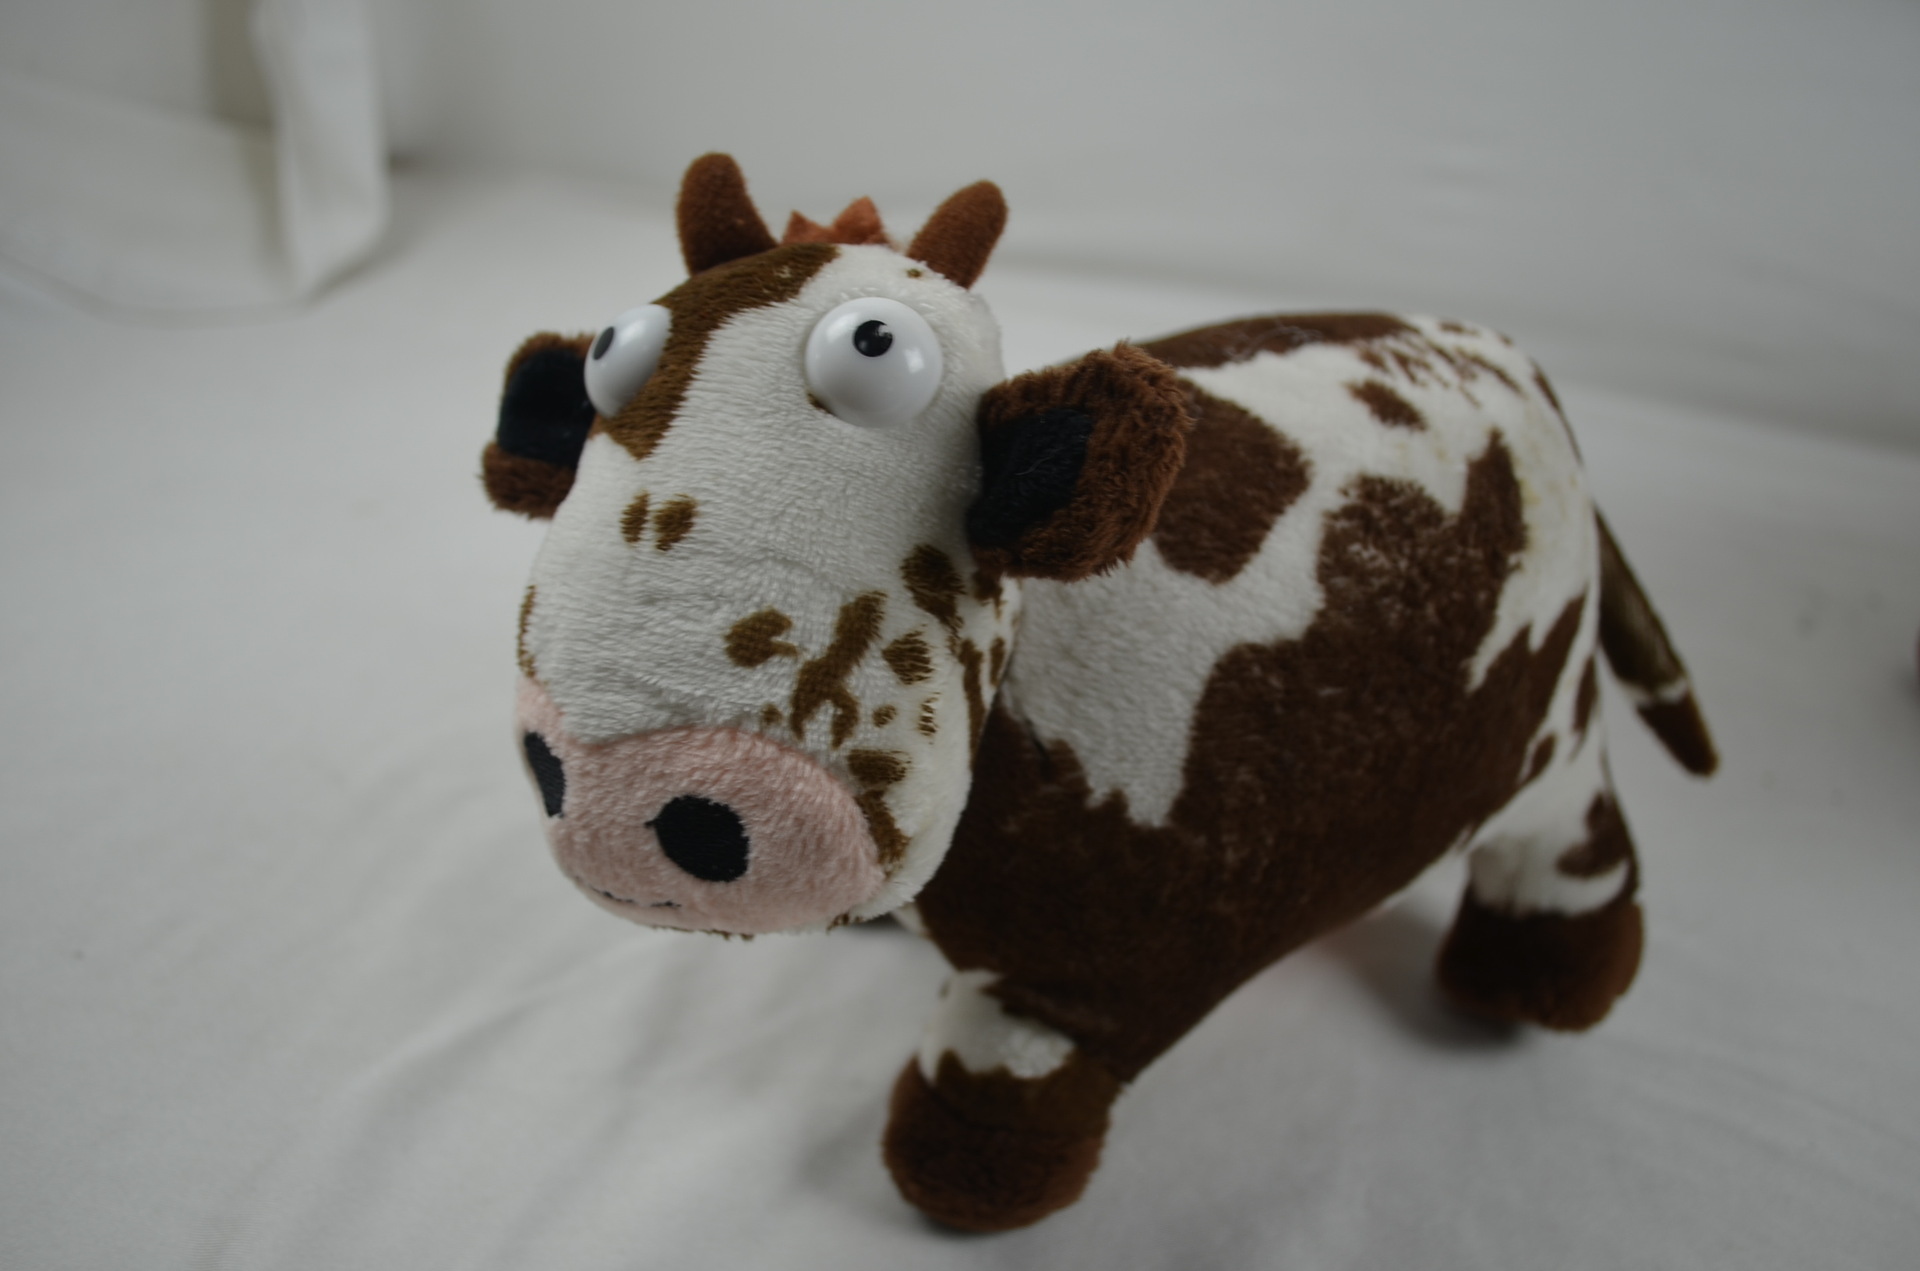 扬州 厂家 毛绒玩具 批发 定做 加工 设计 牛公仔